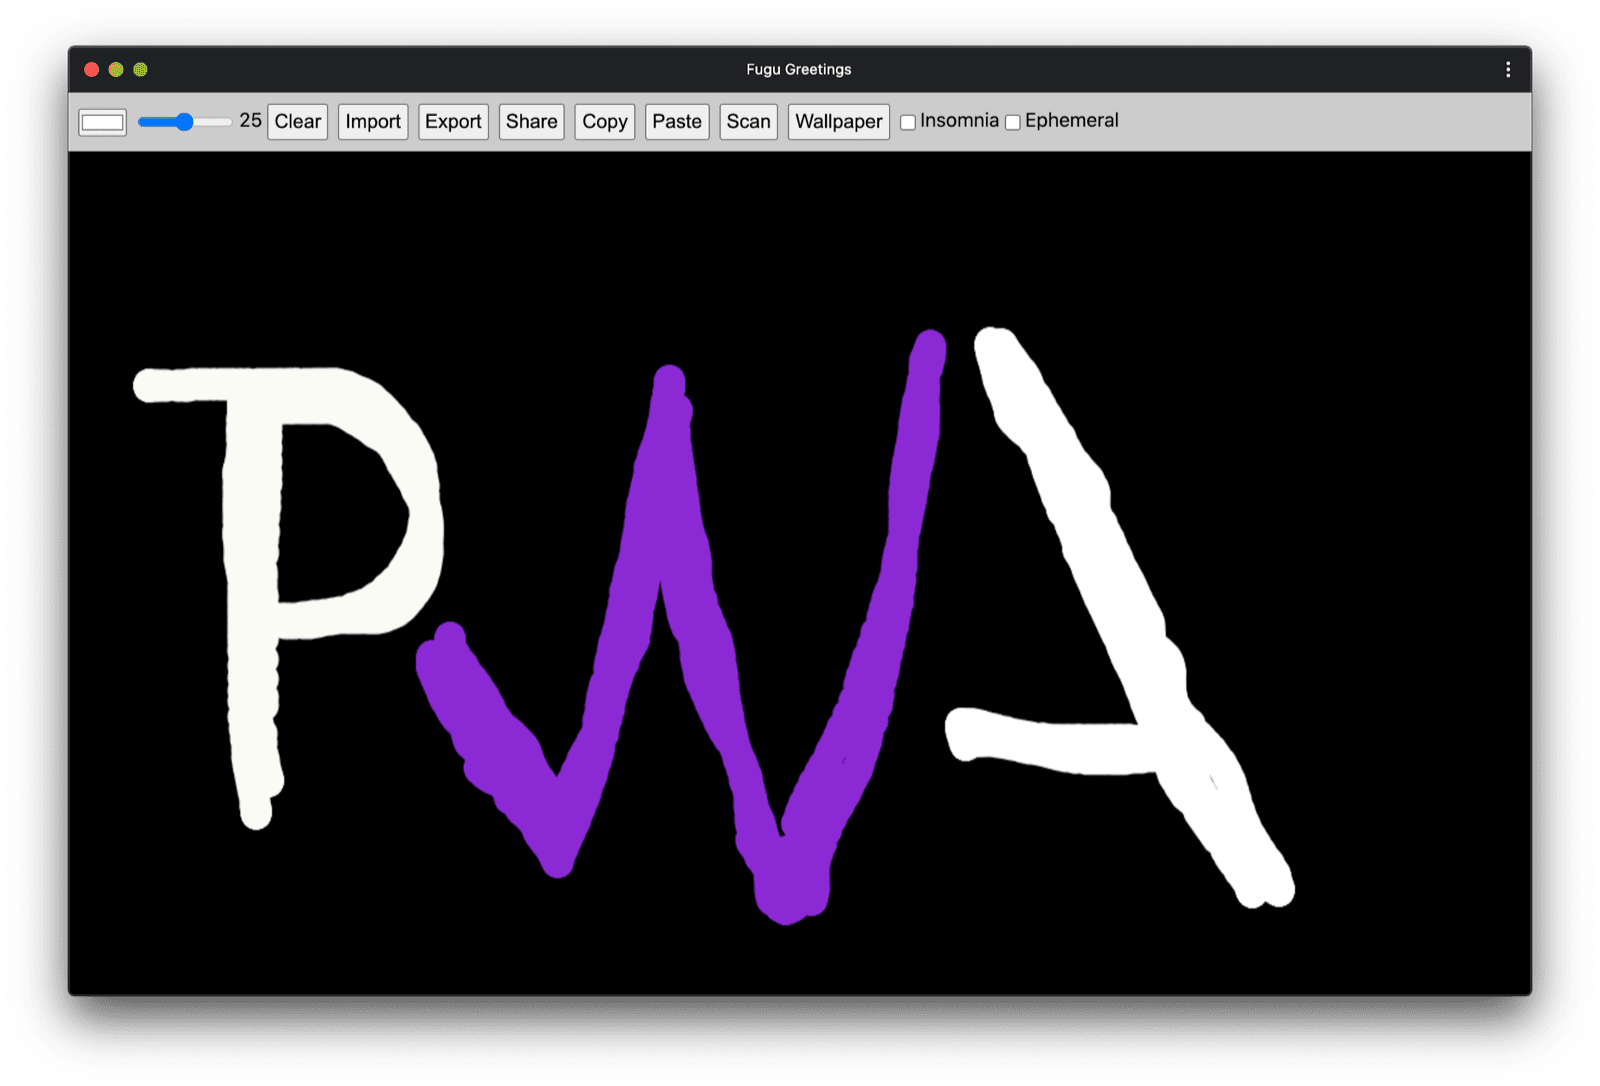 PWA का ग्रीटिंग मैसेज, PWA के कम्यूनिटी लोगो की तरह दिखता है.